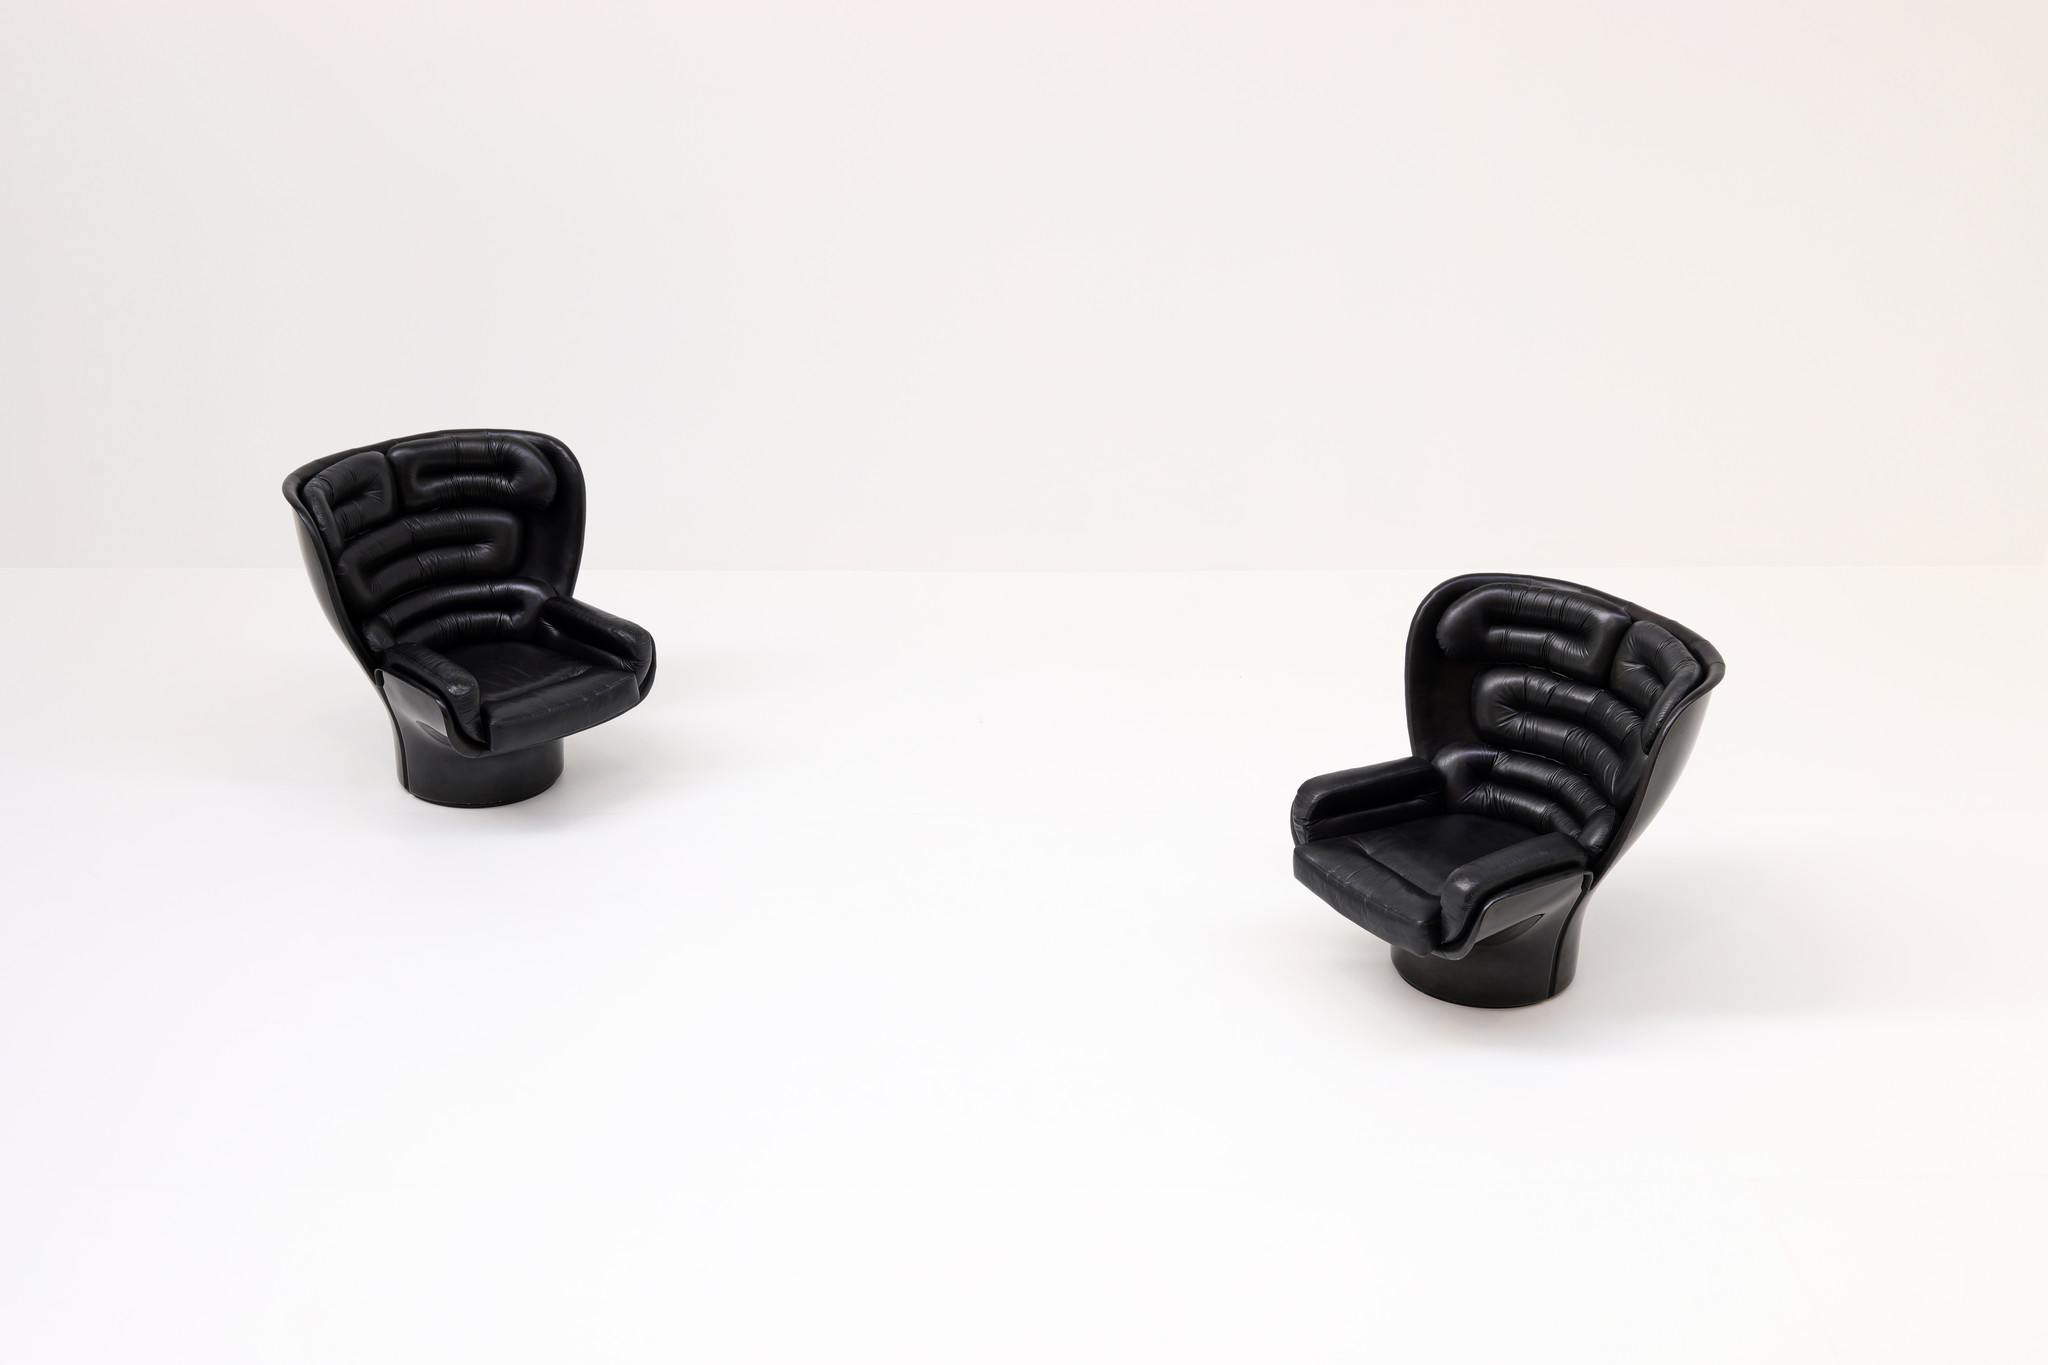 Elda Chairs ontworpen door Joe Colombo voor comfort.